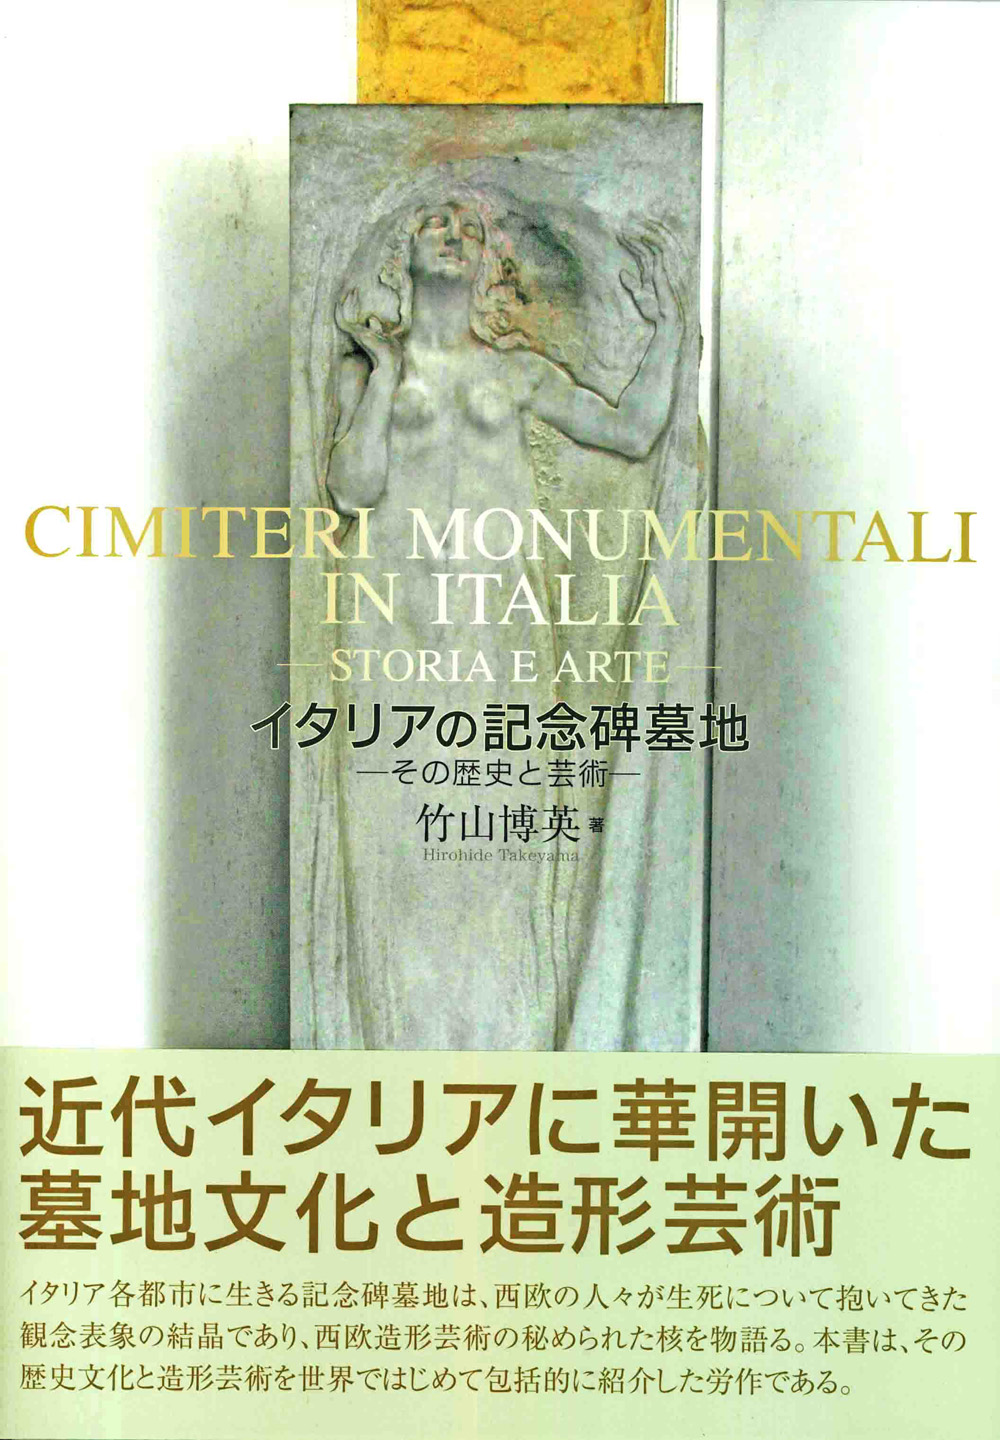 イタリアの記念碑墓地画像集へ